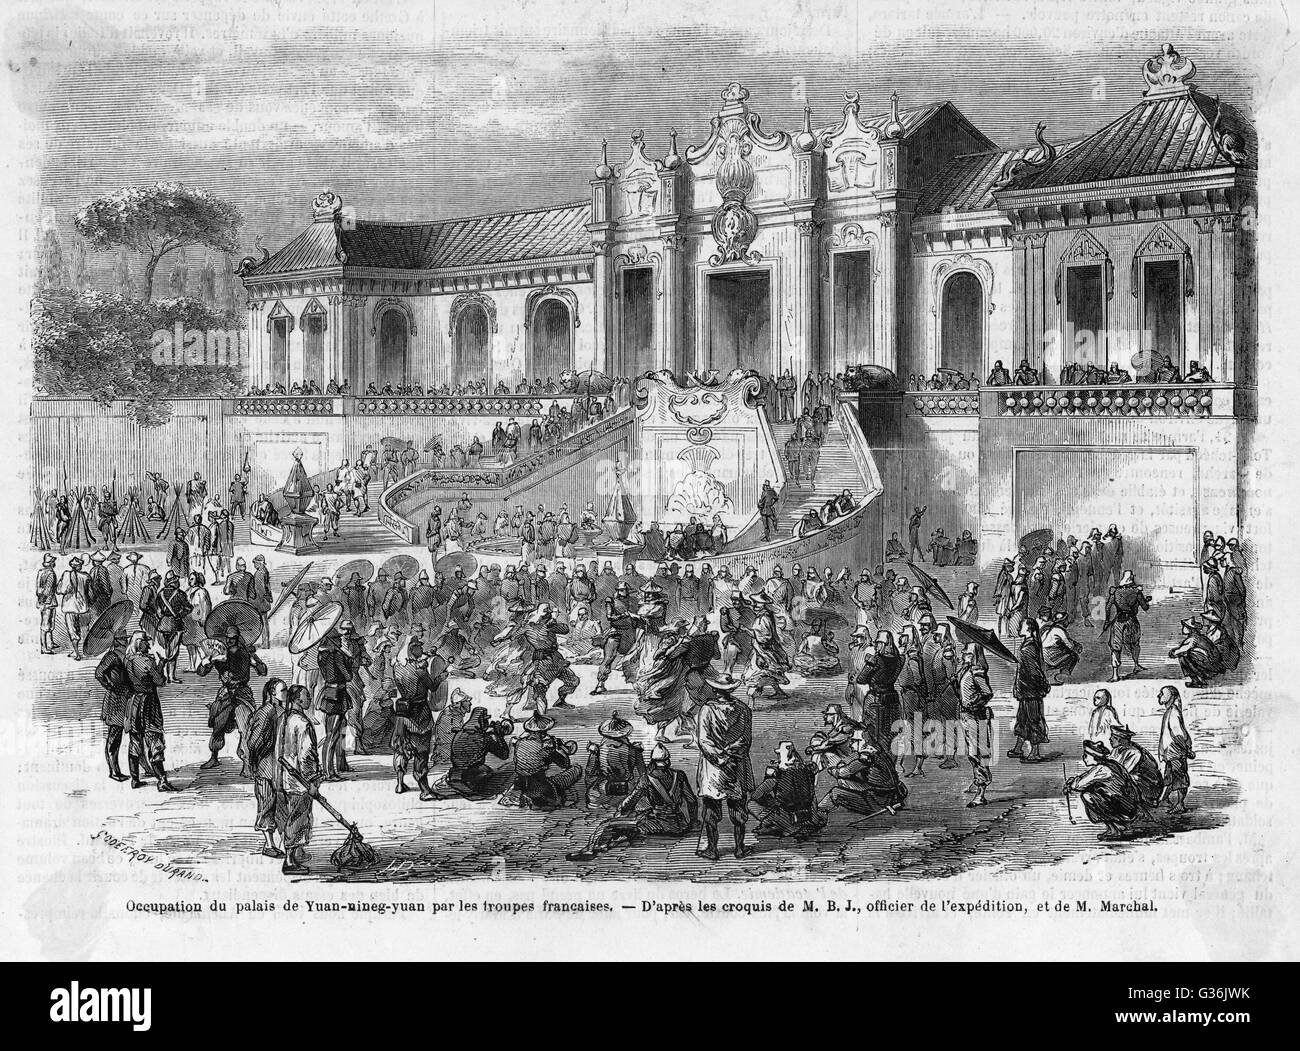 Der britische Hochkommissar nach China, Lord Elgin, der Zerstörung des Sommerpalastes in Peking (Peking), die dann von französischen und britischen Truppen während des zweiten Opiumkrieges am 6. Oktober 1860 durchgeführt wurde...         Datum: 1860 Stockfoto